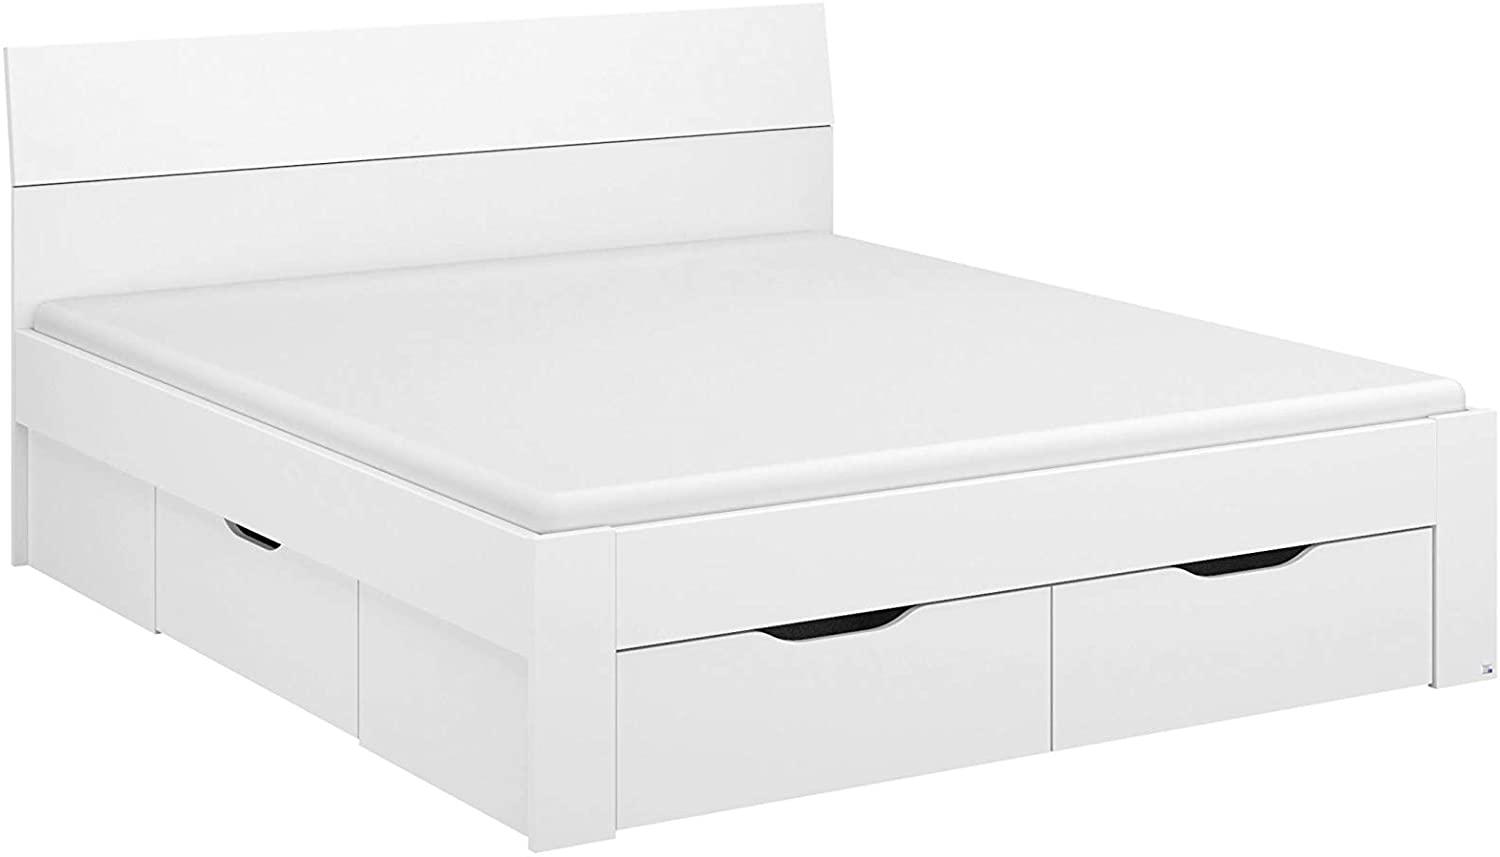 Rauch Möbel Flexx Bett Stauraumbett in Weiß mit 3 Schubkästen als zusätzlichen Stauraum Liegefläche 180 x 200 cm Gesamtmaße Bett BxHxT 185 x 90 x 209 cm Bild 1